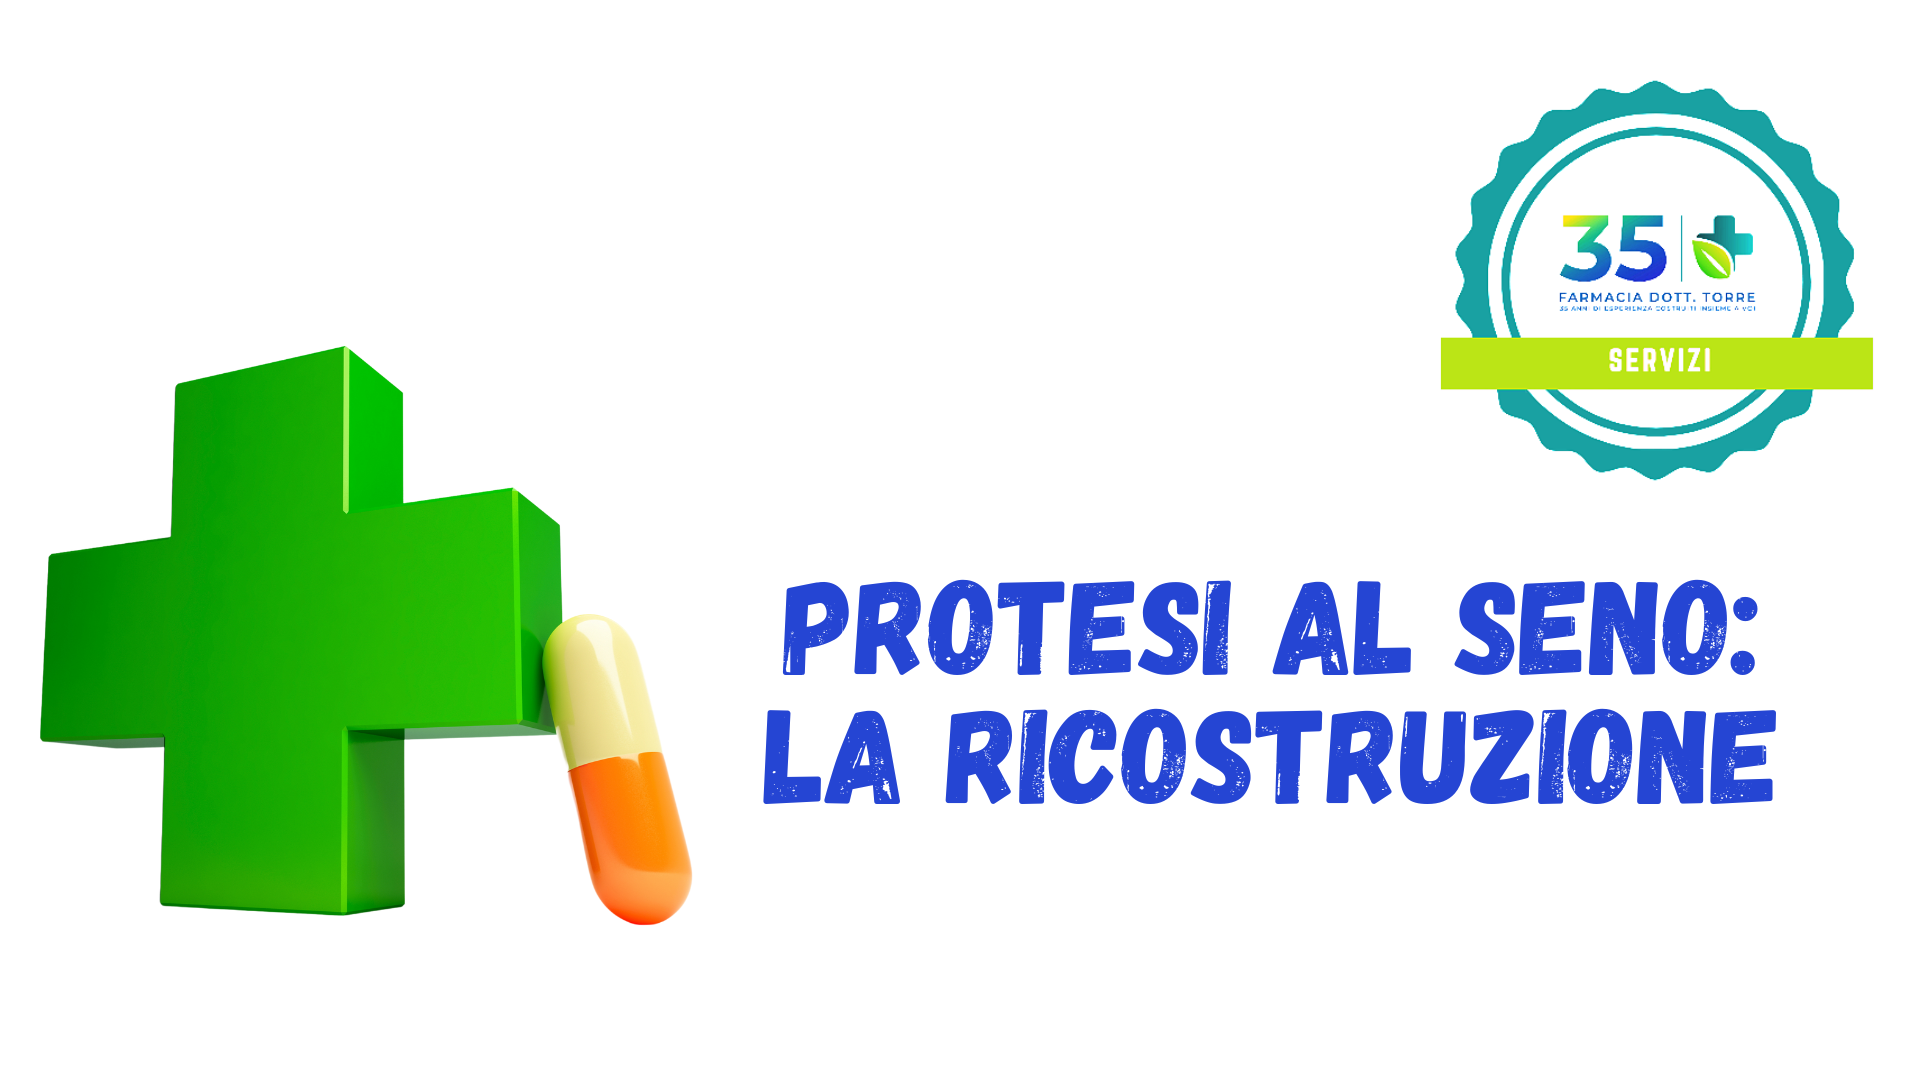 PROTESI AL SENO: LA RICOSTRUZIONE